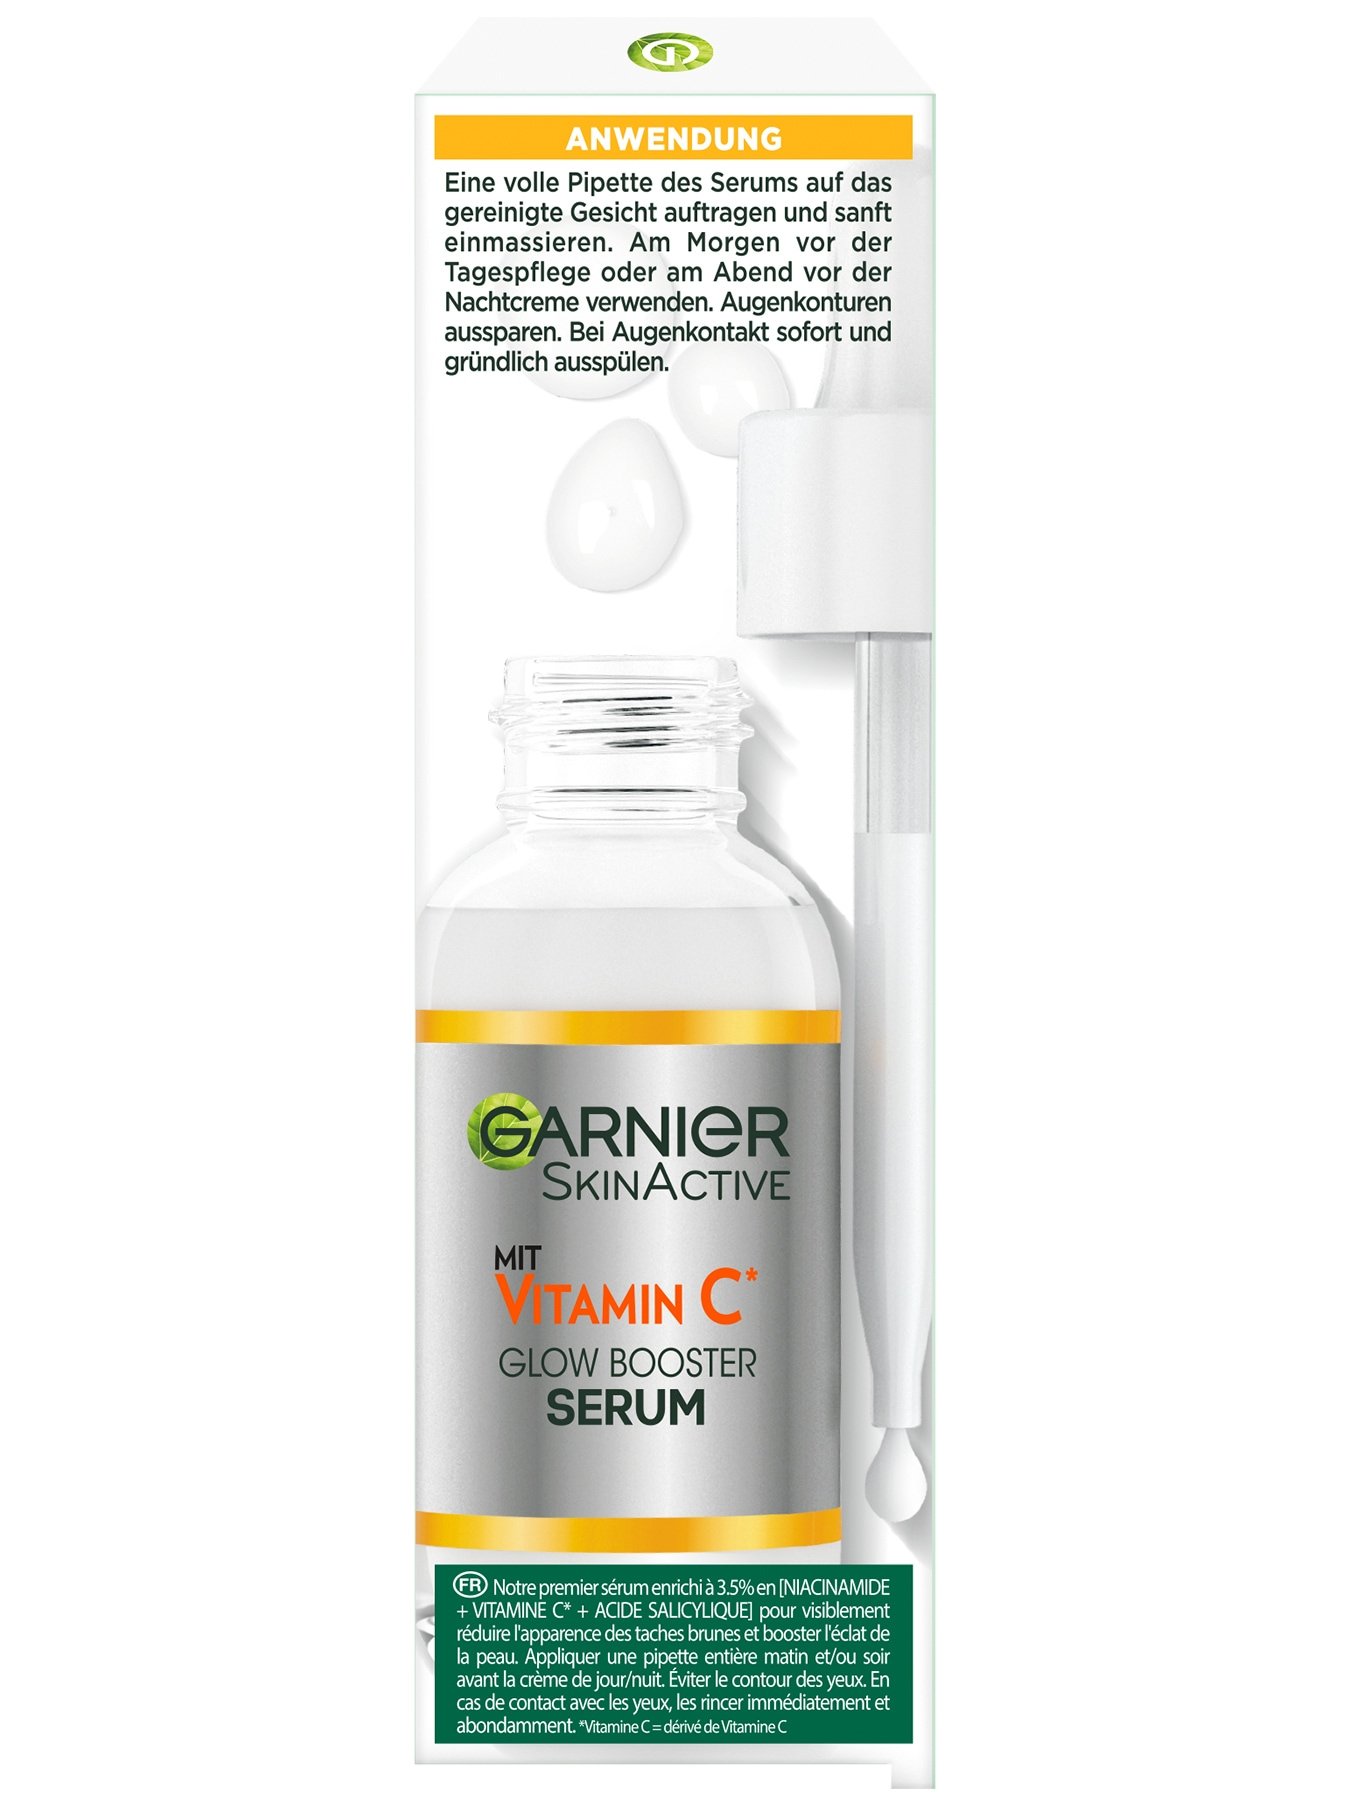 SkinActive Glow Booster Serum mit Vitamin C - Verpackung Seitenansicht